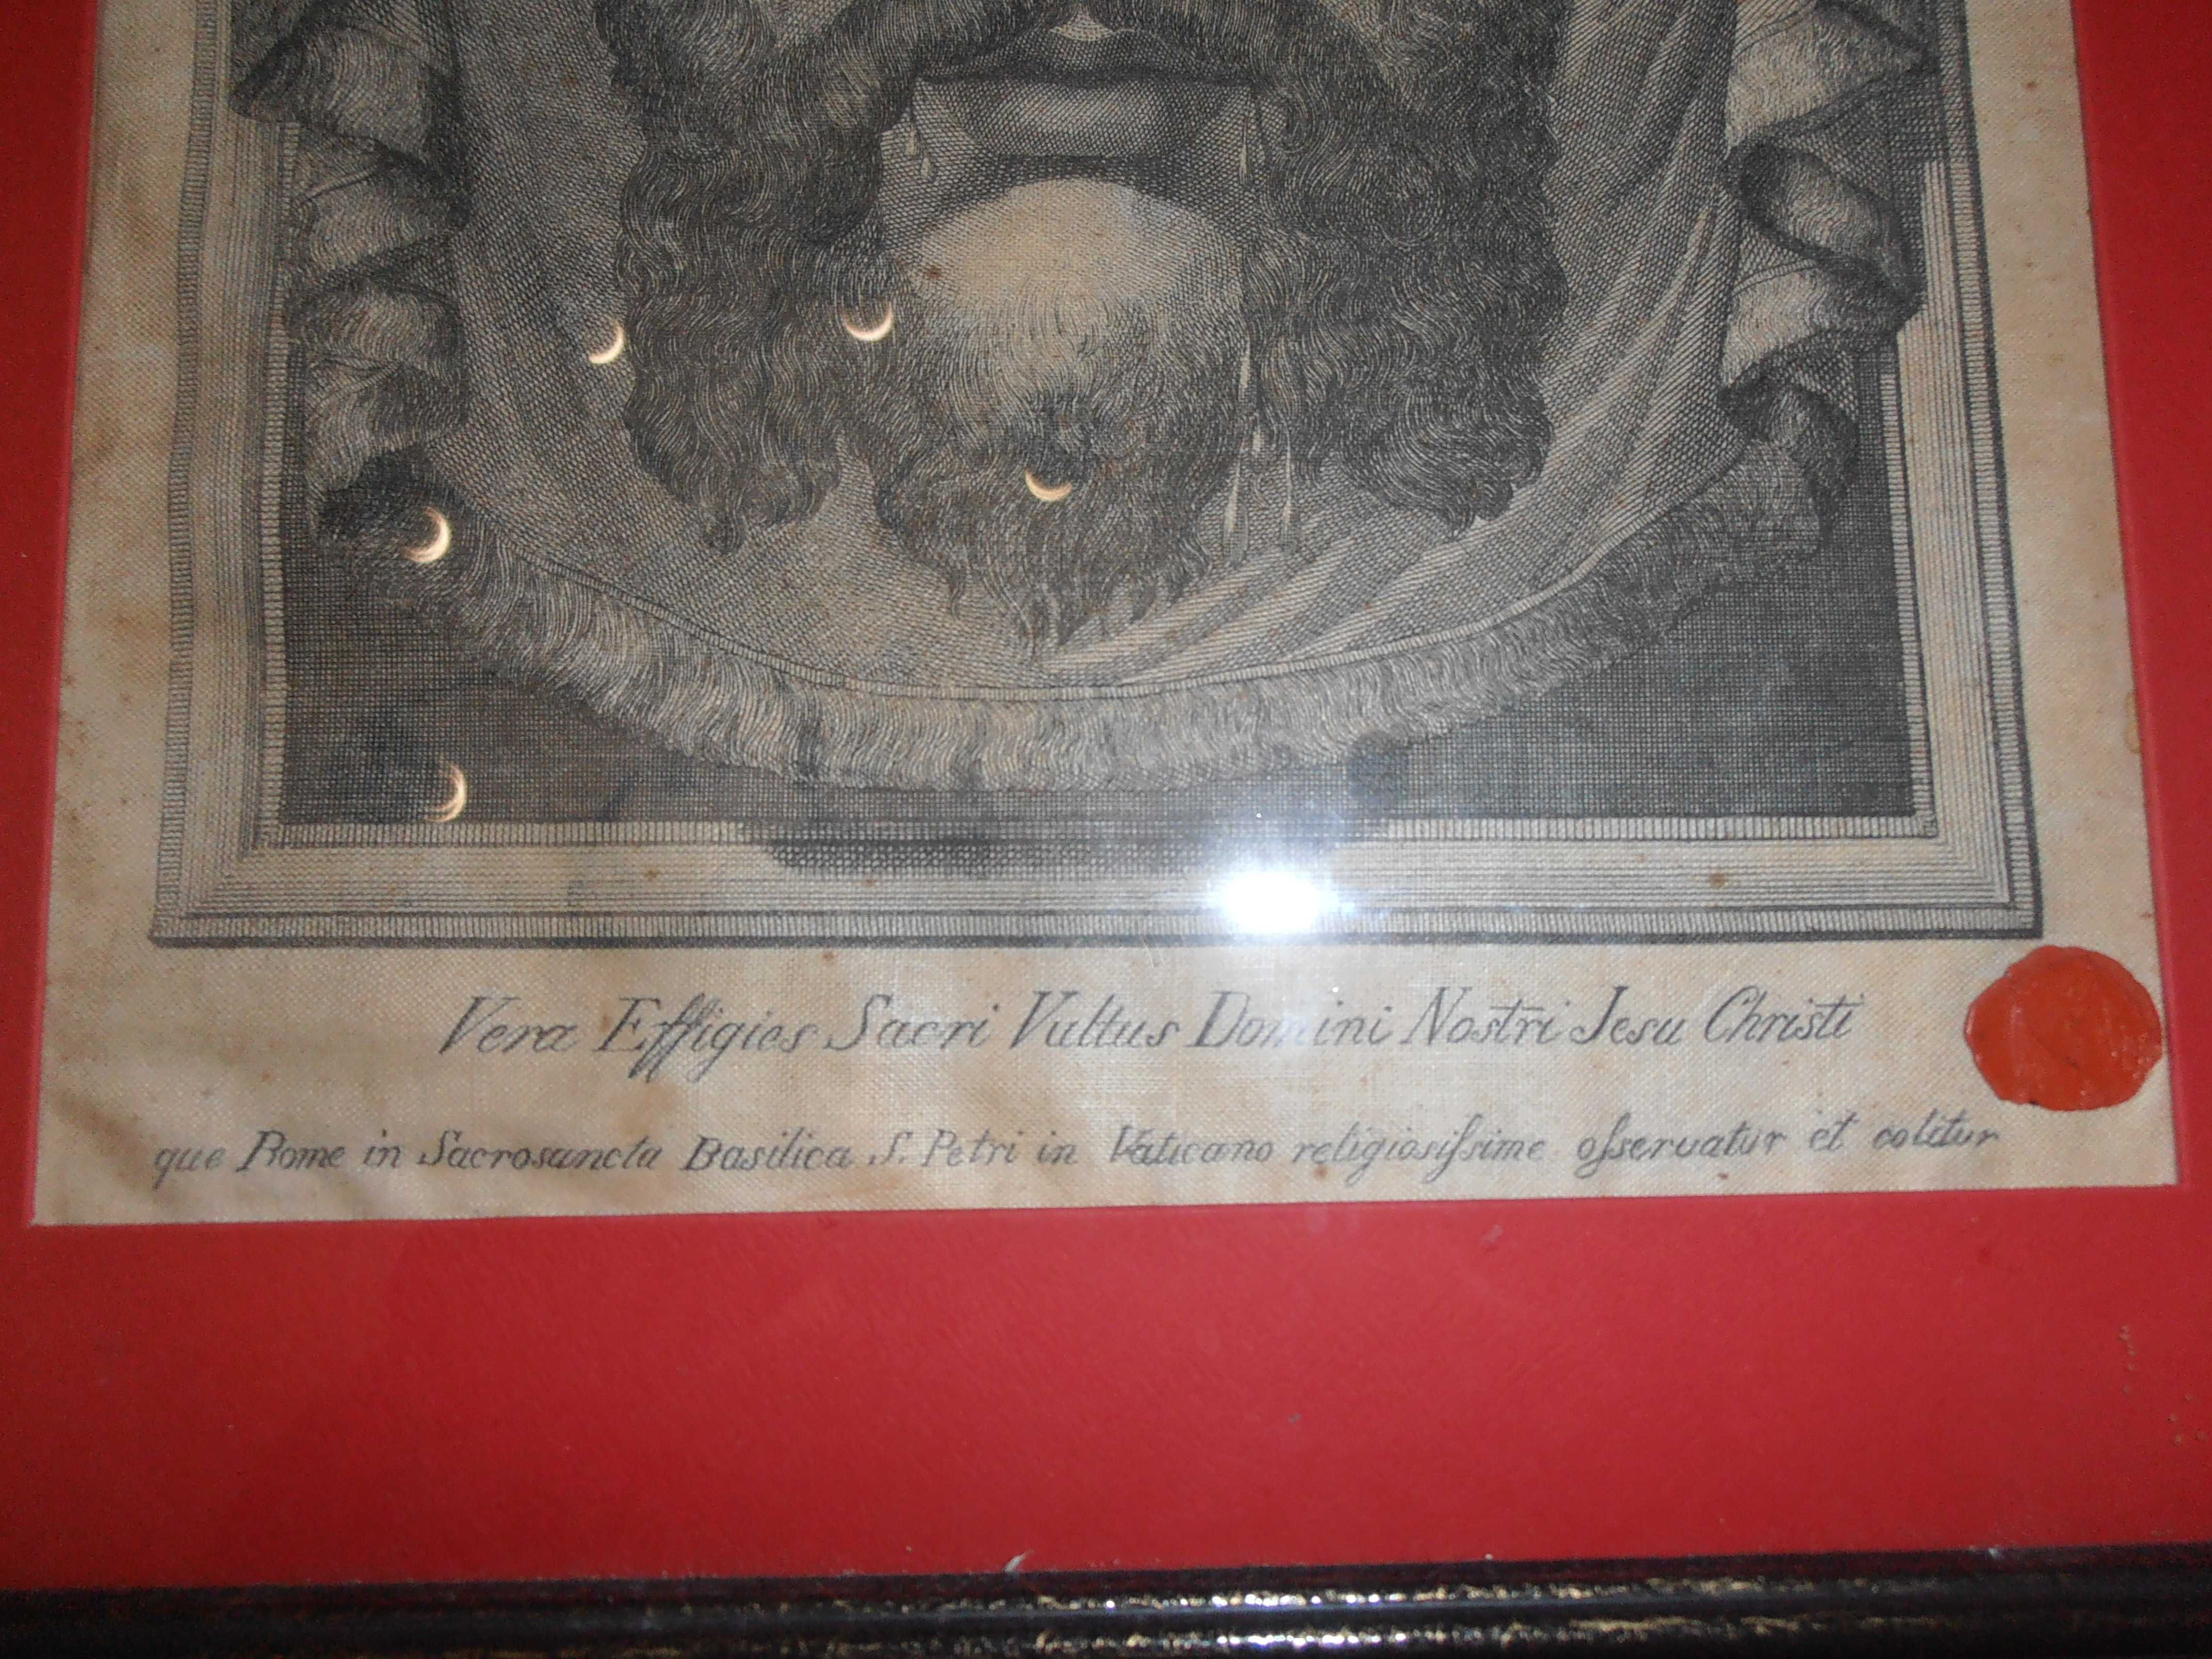 quadro relíquia certificado- efígie de cristo, véu de verónica,séc.xix